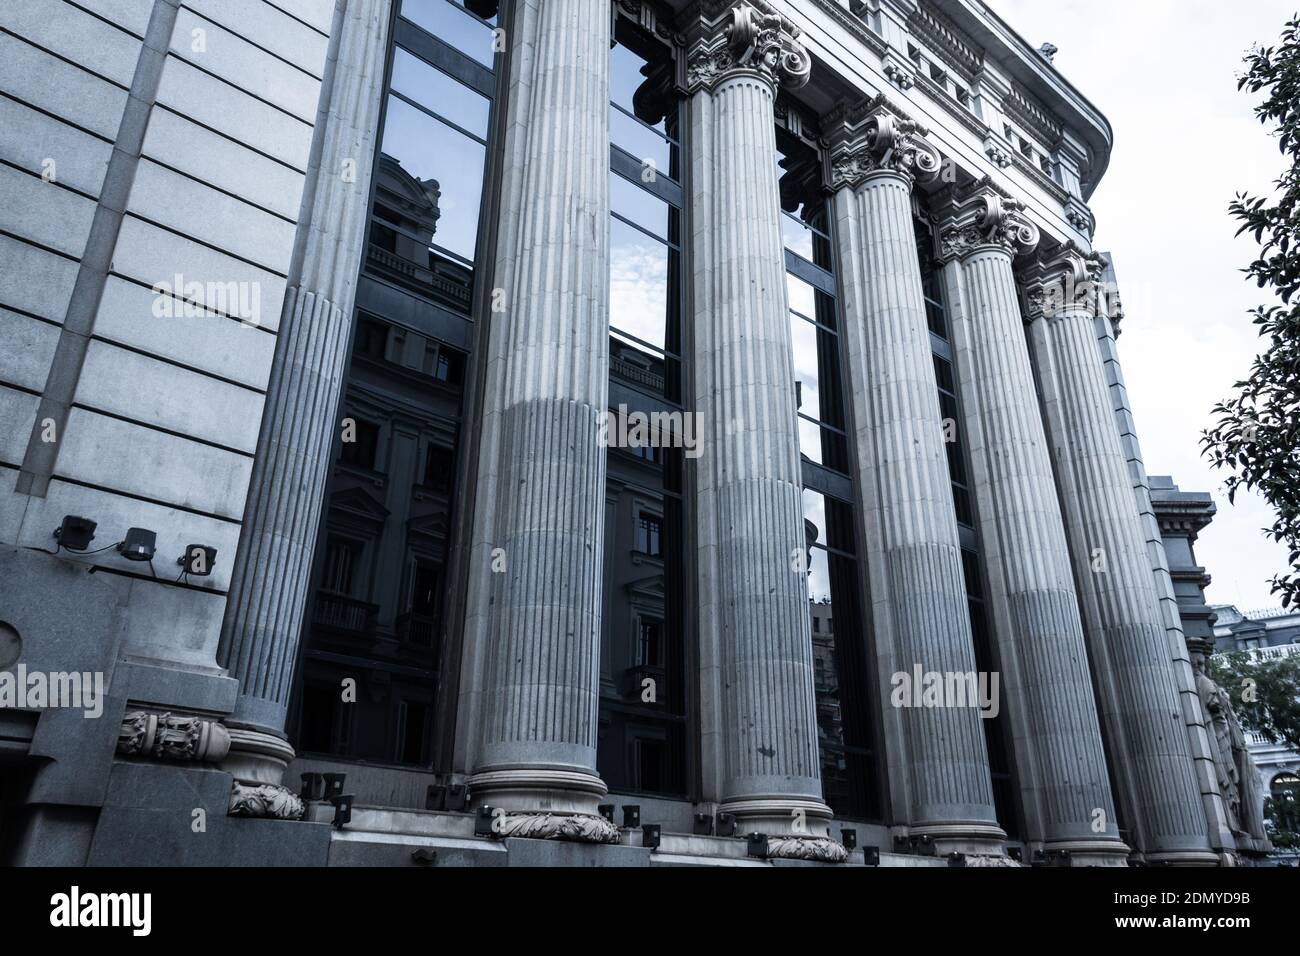 Große Säulen von Cervantes Institut Seitenfassade in Madrid. Spanische öffentliche Einrichtung. Eklektisches Architekturkonzept, kaltblauer Effekt angewendet Stockfoto